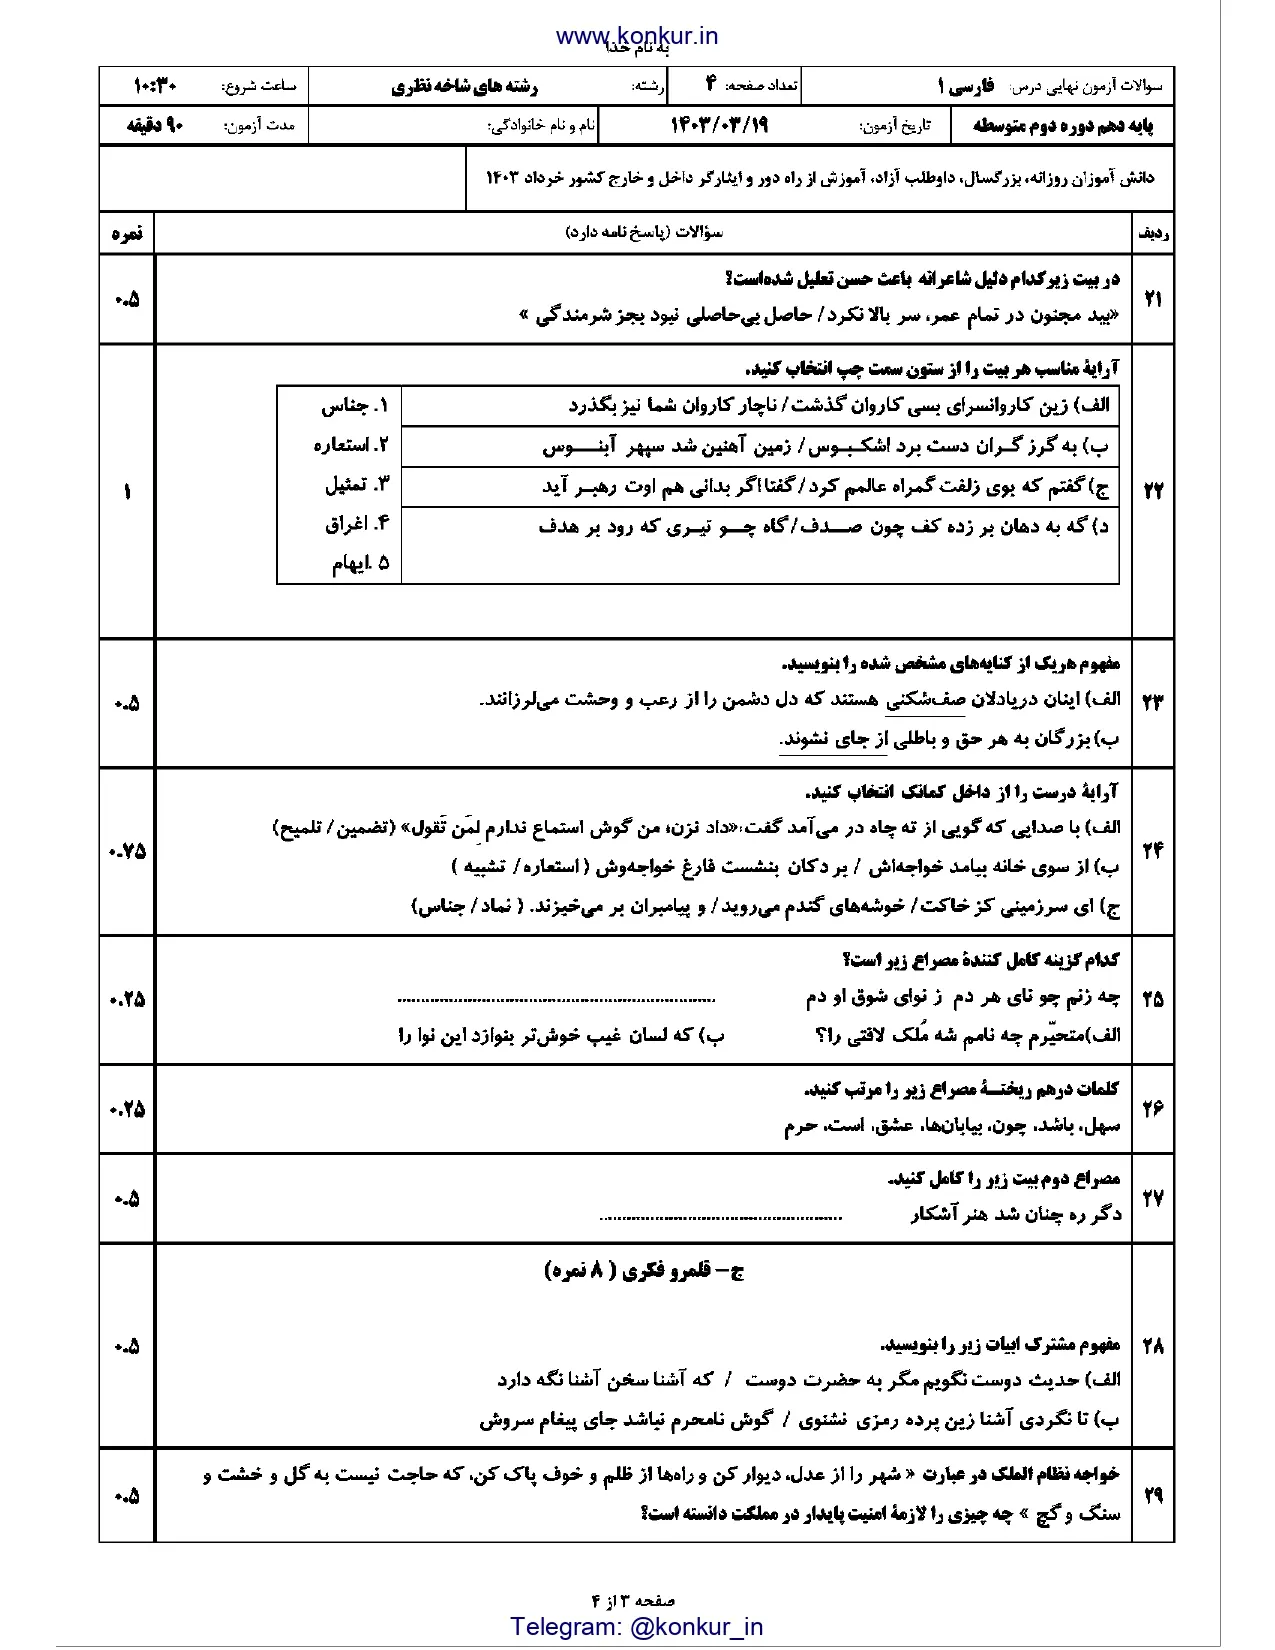 سوالات امتحان نهایی فارسی دهم خرداد ۱۴۰۳ + پاسخنامه تشریحی